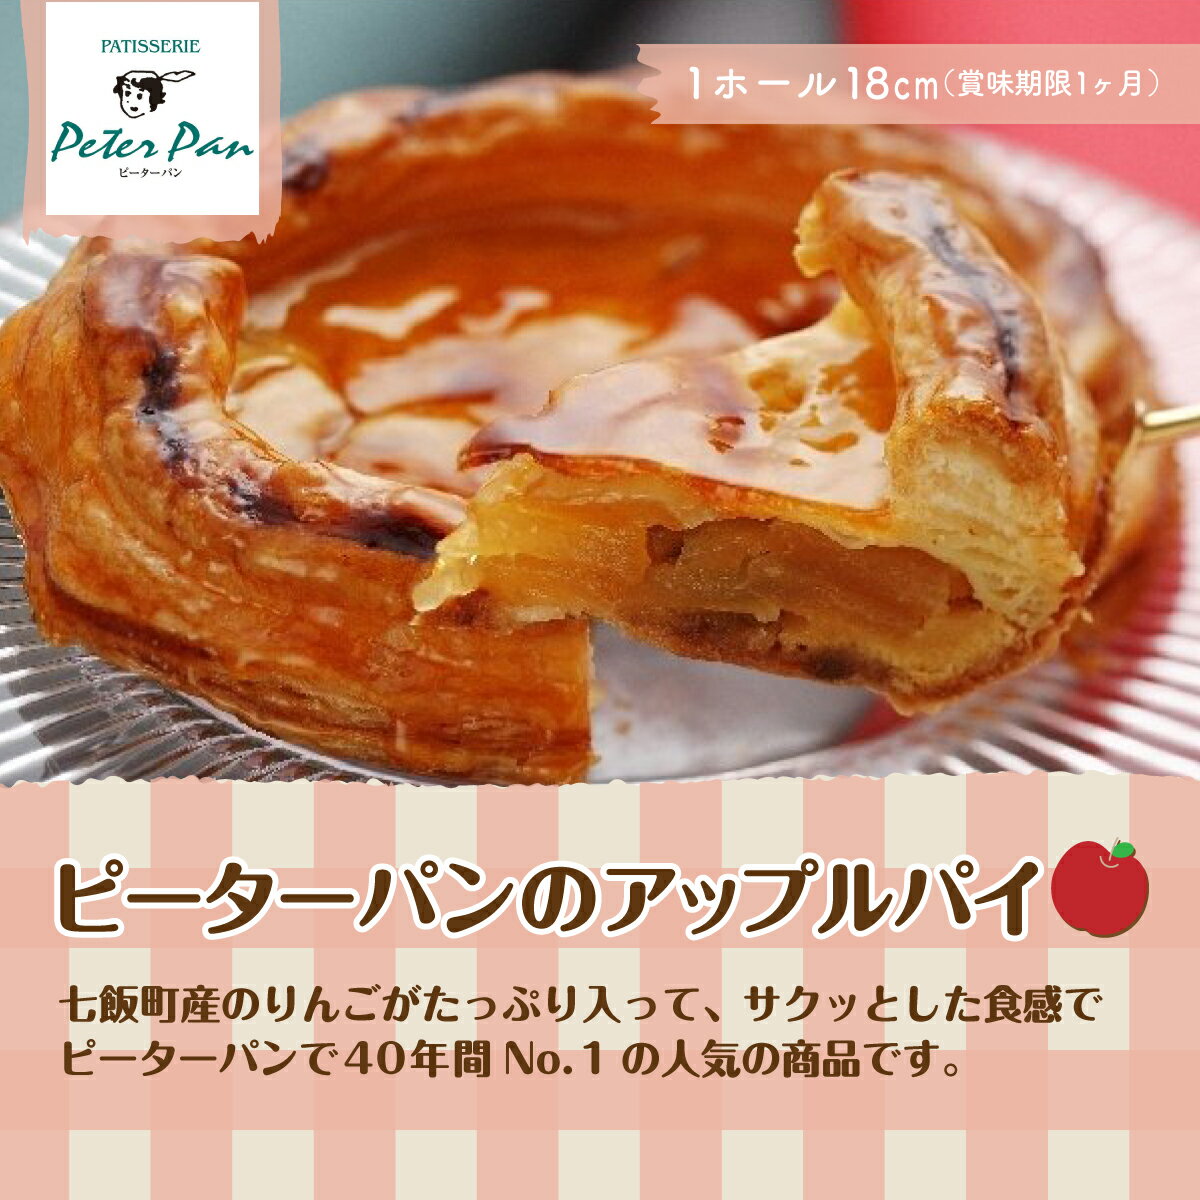 りんごをたっぷり!ピーターパン大人気のアップルパイ 北海道七飯町 りんご アップルパイ スイーツ 甘味甘いもの おやつ